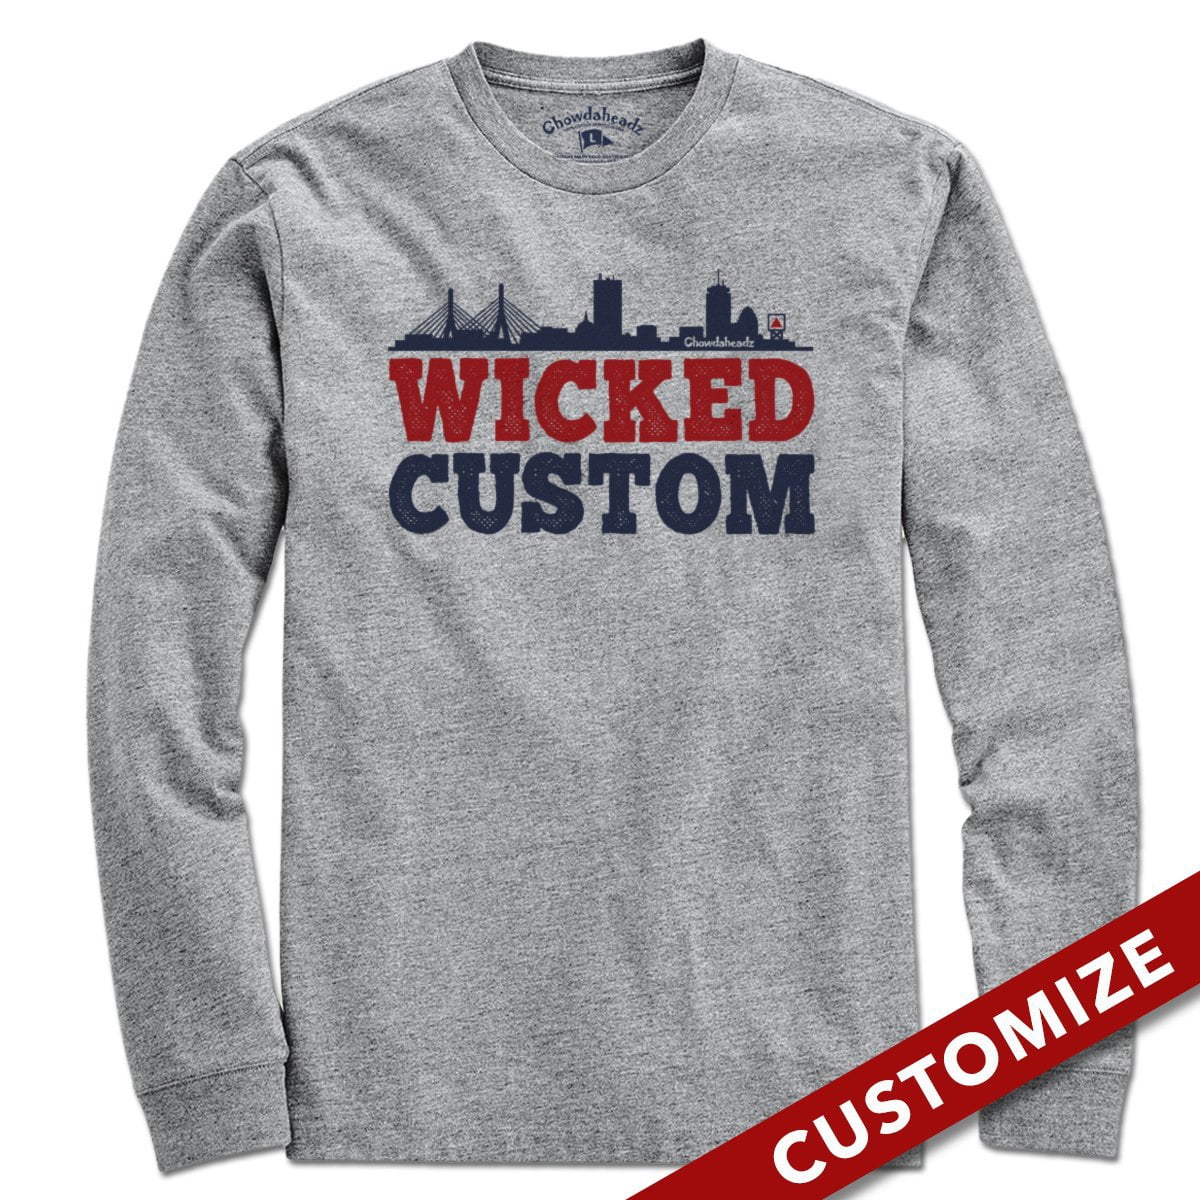 Wicked Custom T-Shirt - Chowdaheadz